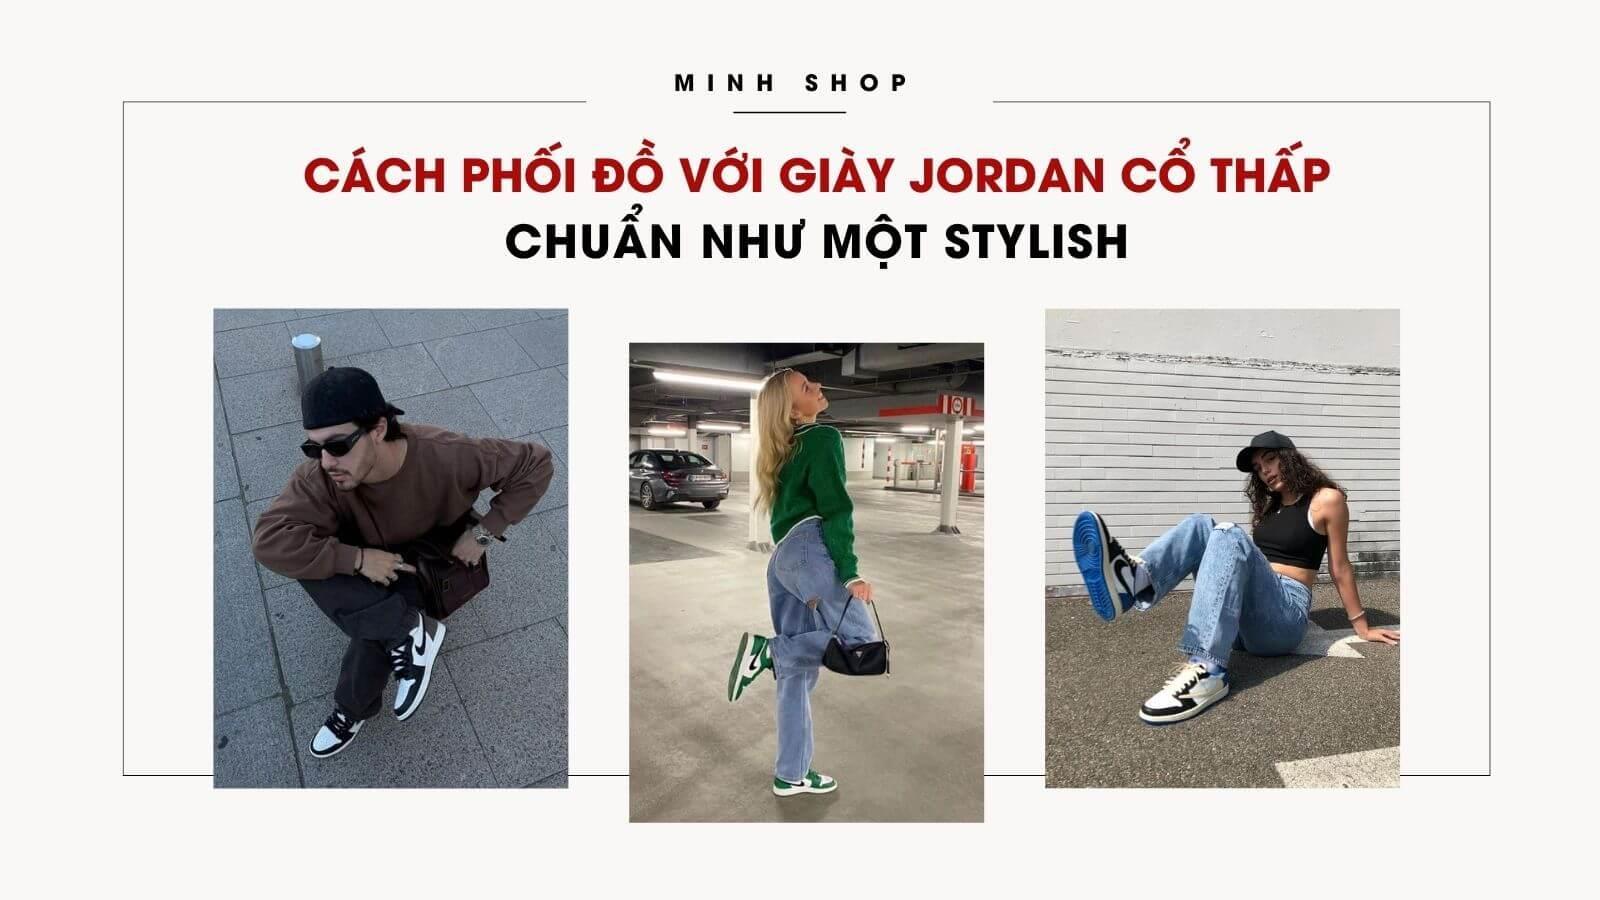 cach-phoi-do-voi-giay-jordan-co-thap-chuan-nhu-mot-stylish